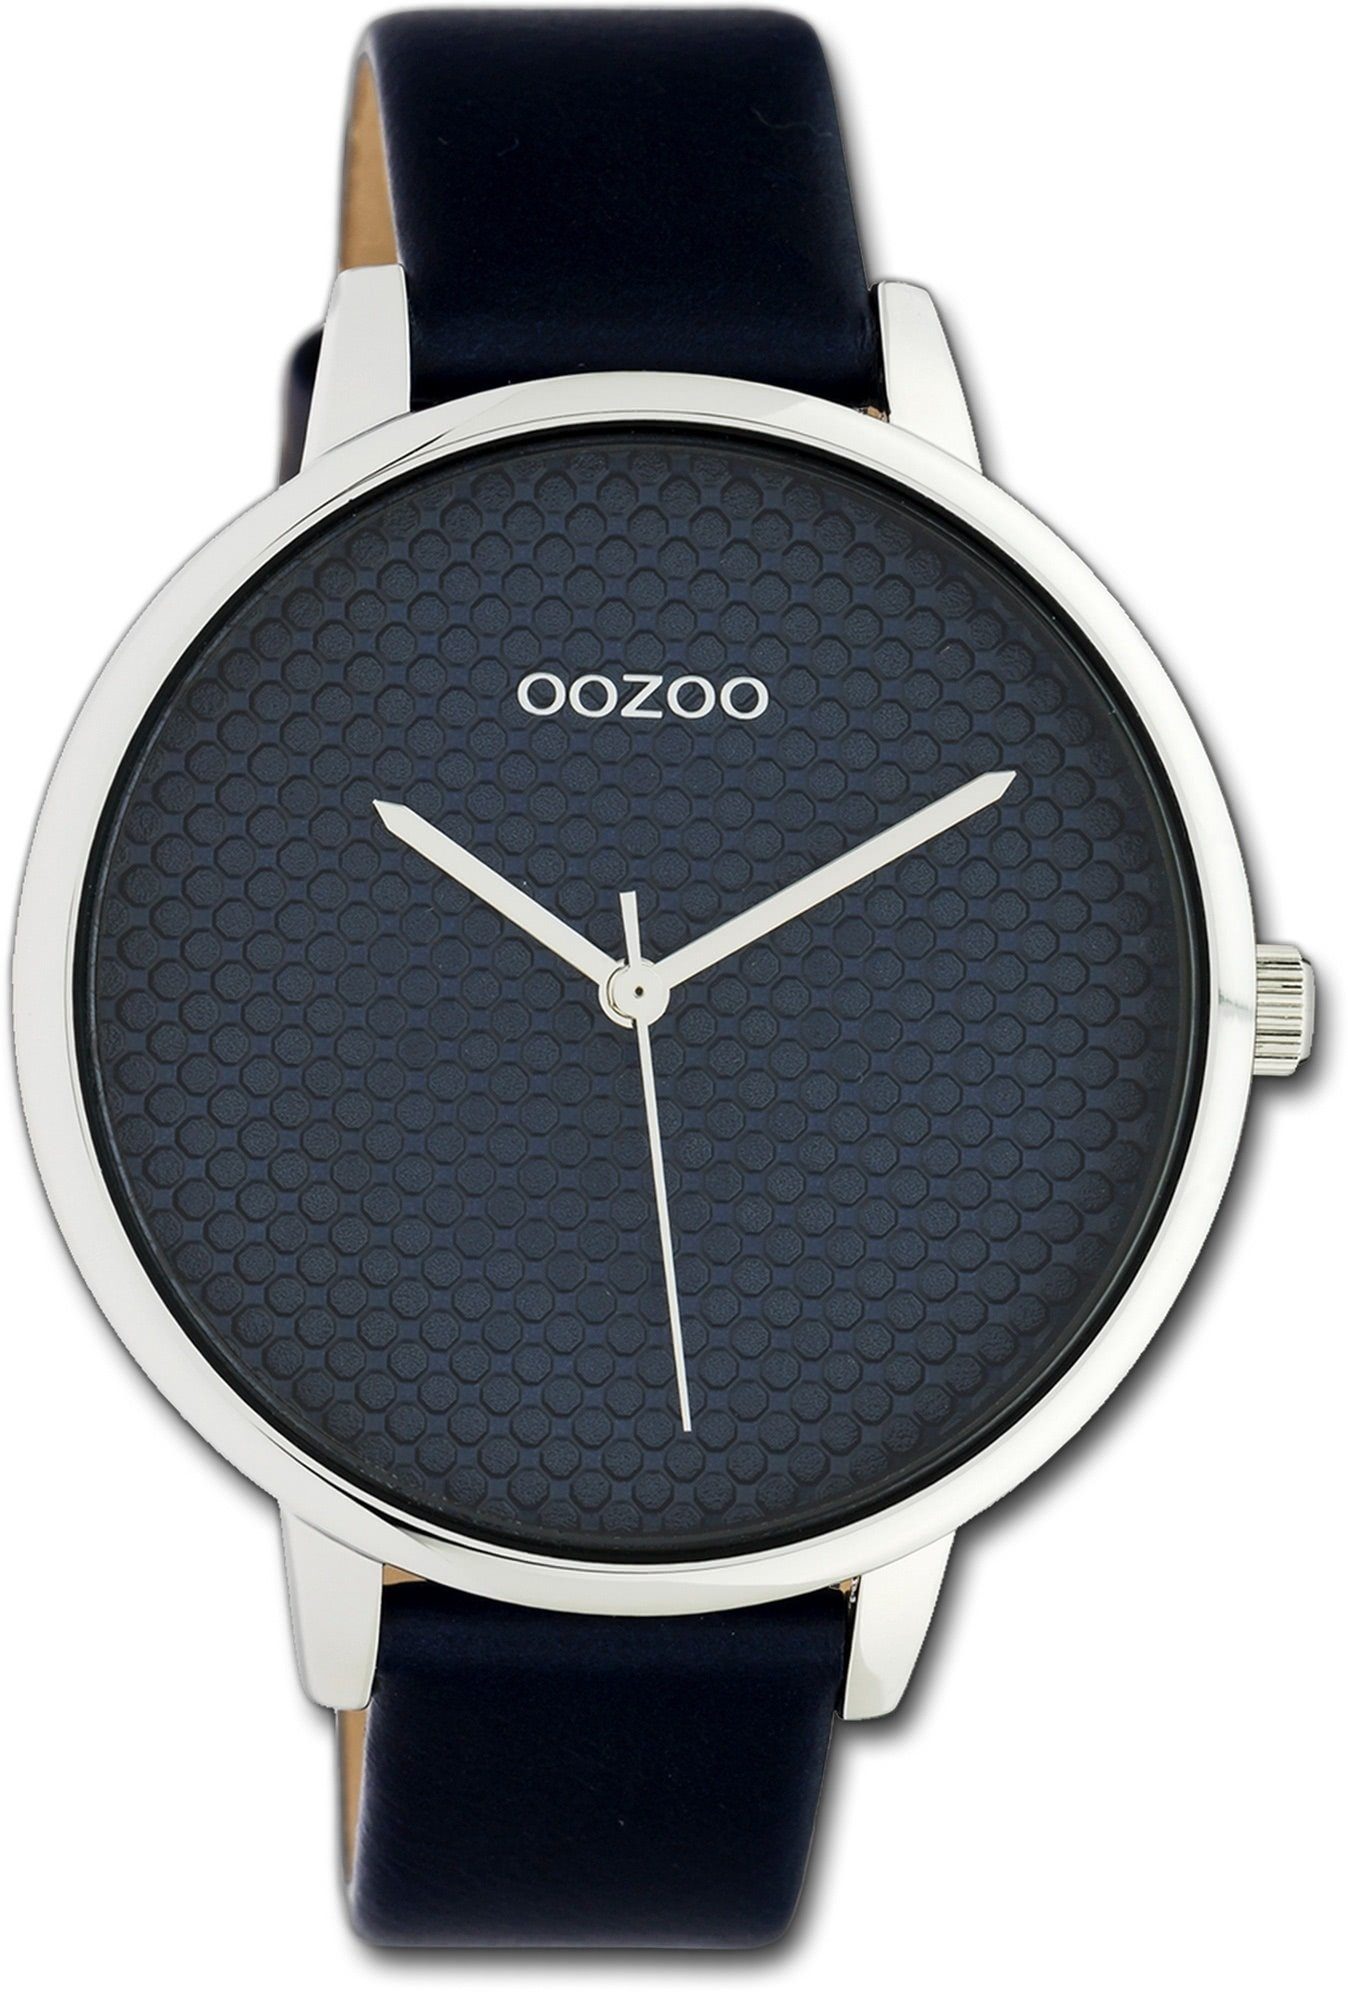 OOZOO Quarzuhr Oozoo Leder Damen Uhr C10594 Analog, Damenuhr Lederarmband dunkelblau, rundes Gehäuse, groß (ca. 42mm)